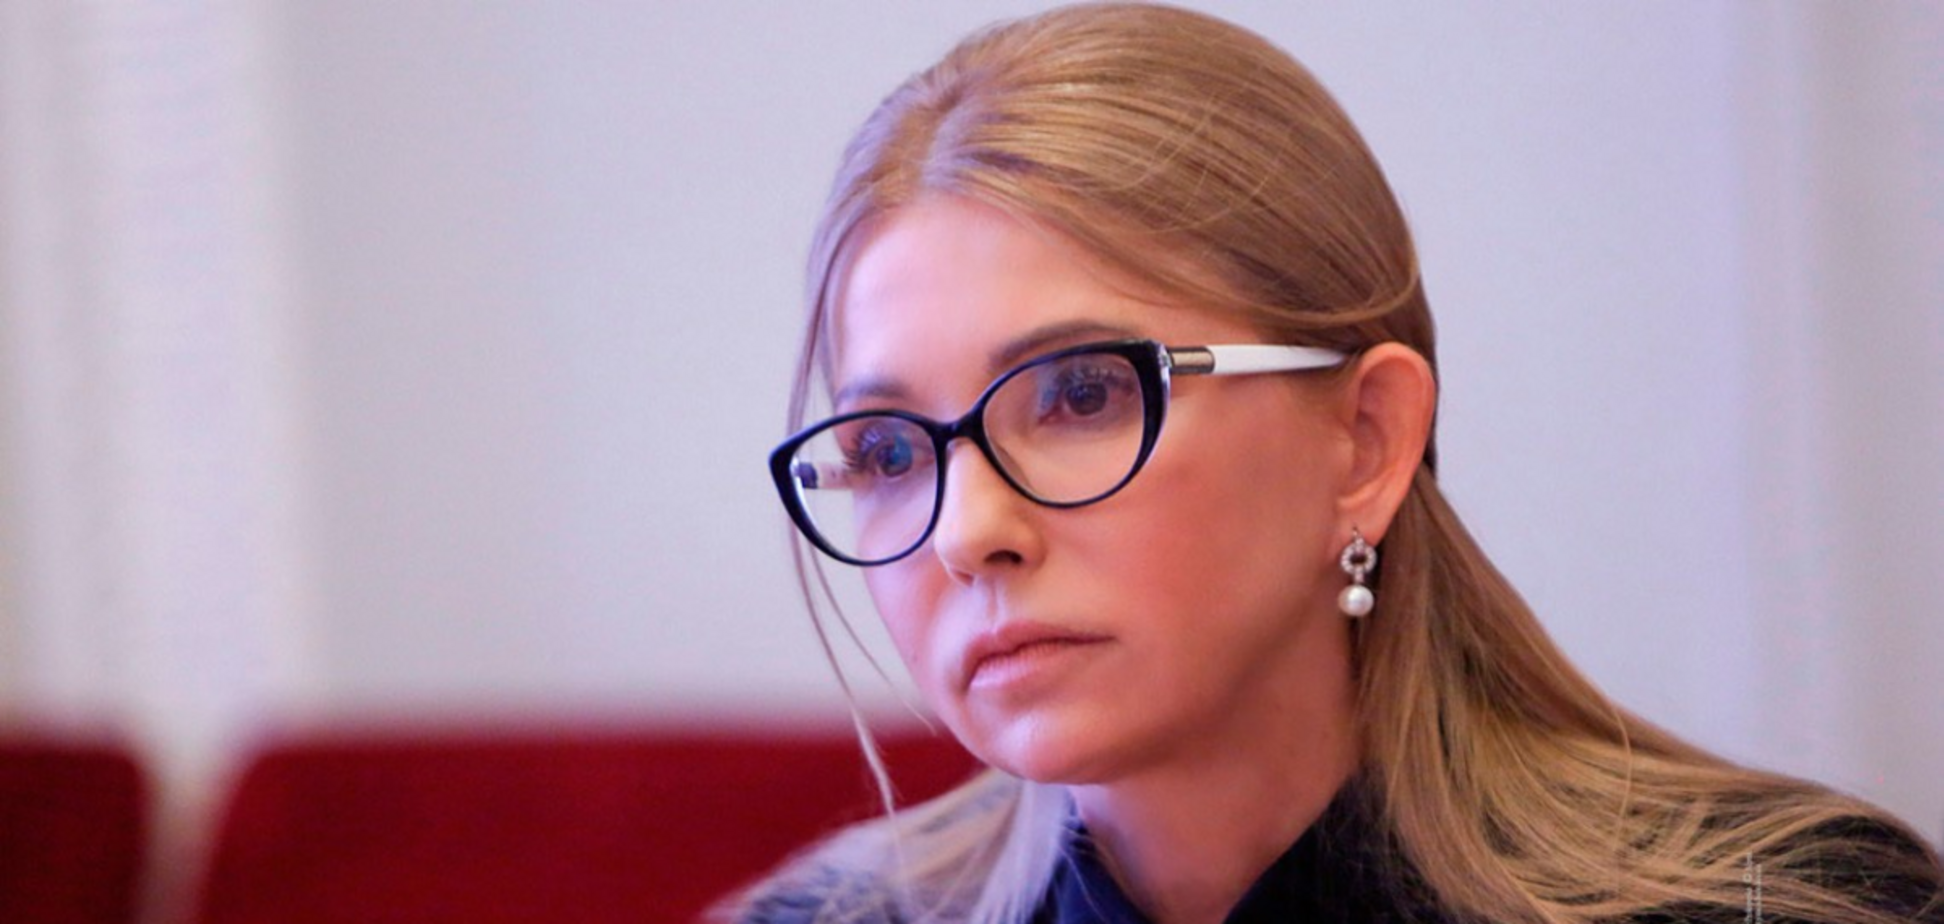 Українцям потрібен ефективний прем'єр: витягти країну із кризи зможе Тимошенко, - політолог